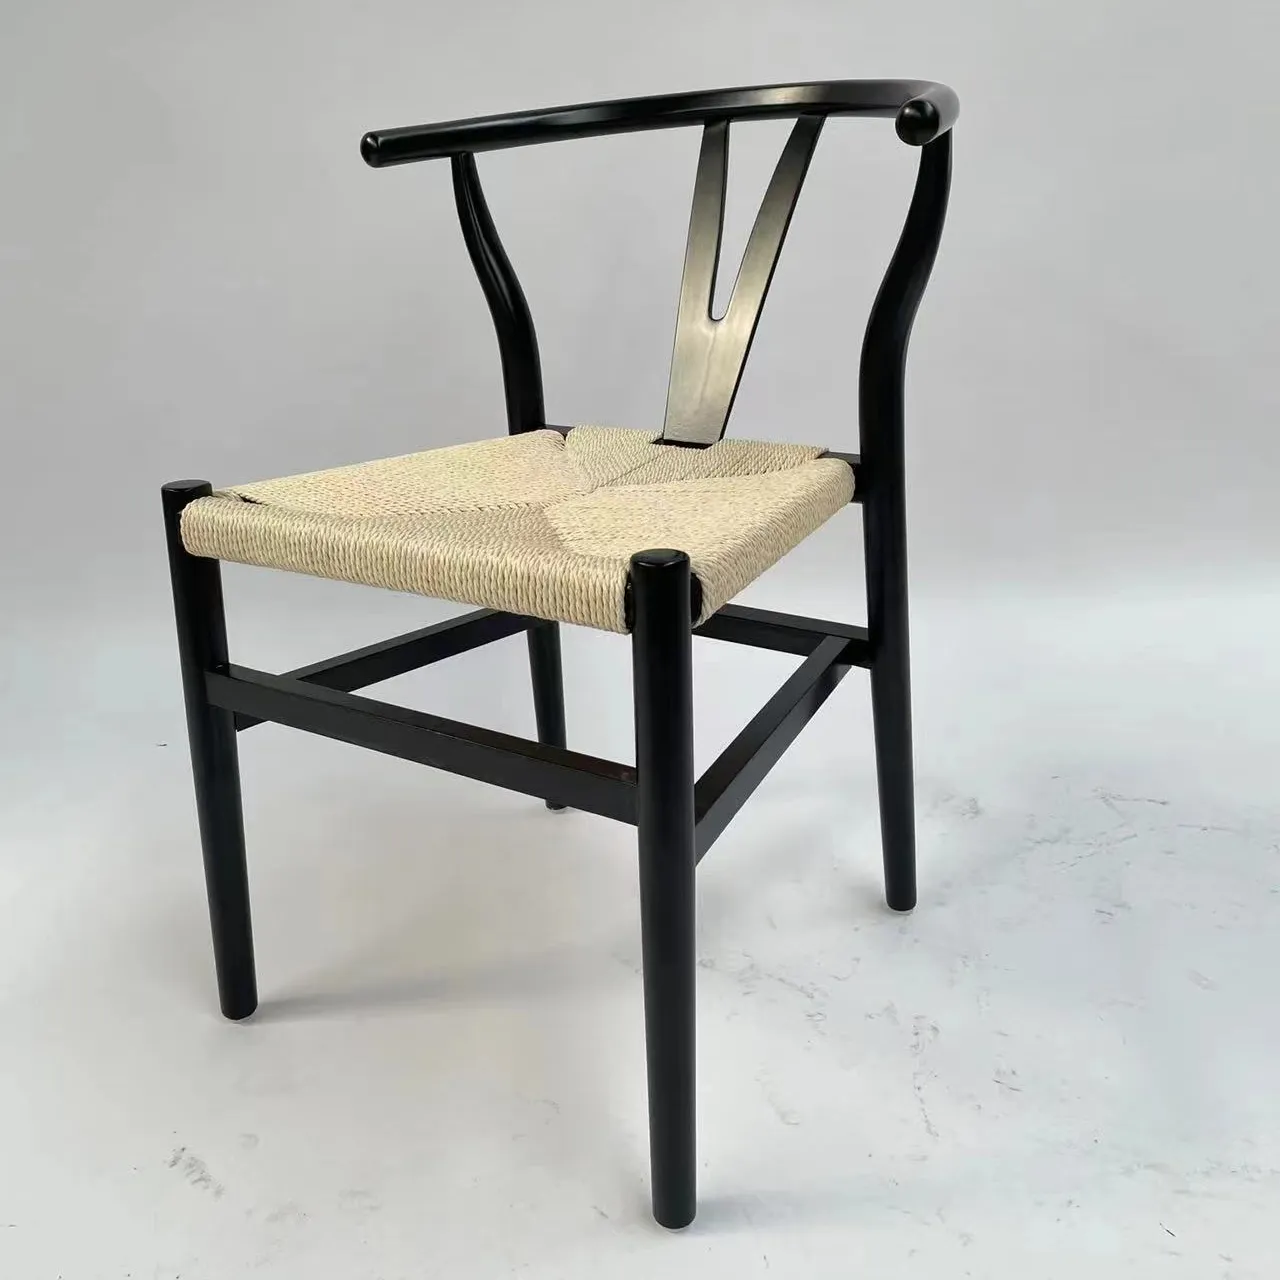 เก้าอี้ไม้แบบมีปีกสไตล์โมเดิร์นสไตล์ญี่ปุ่นเก้าอี้ไม้แบบมีสายทอเก้าอี้ไม้ตัว Y เฟอร์นิเจอร์ห้องนั่งเล่น